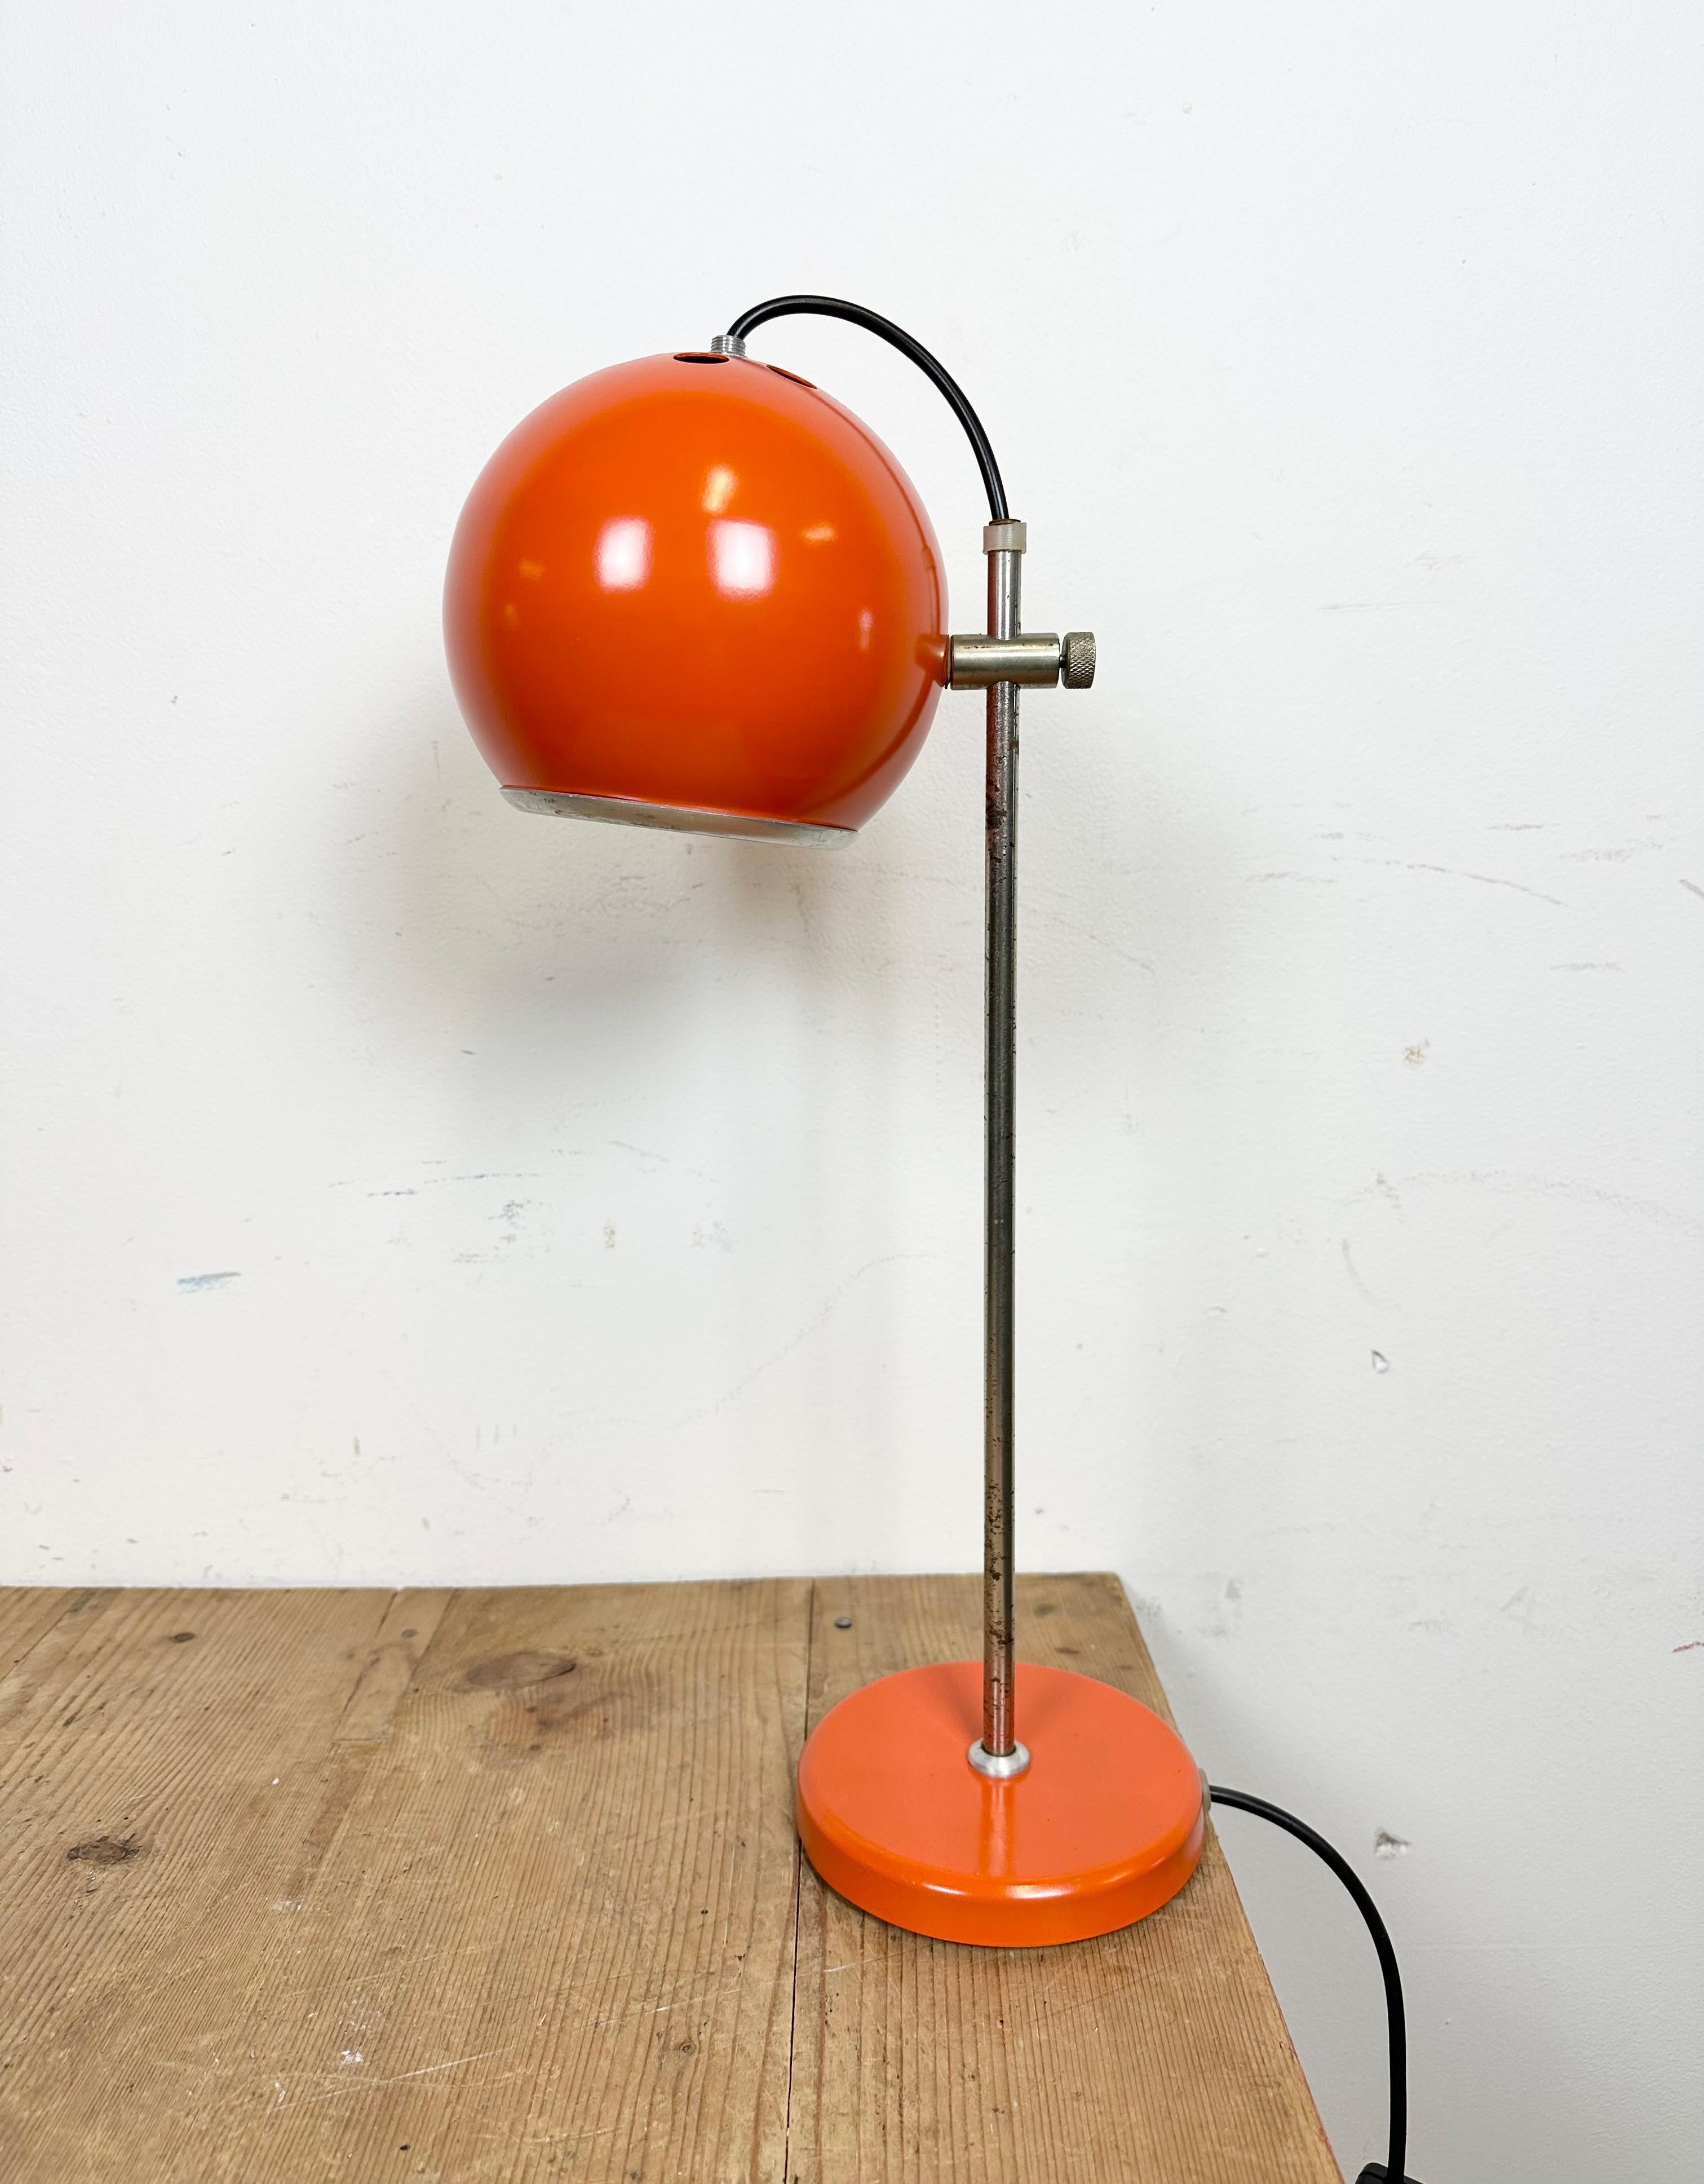 Diese orangefarbene Tischleuchte wurde in den 1970er Jahren von Elektrofem in Ungarn hergestellt. Sie verfügt über einen höhenverstellbaren Lampenschirm aus Metall, einen verchromten Arm und einen Eisenfuß. Vollständig funktionsfähig. Guter